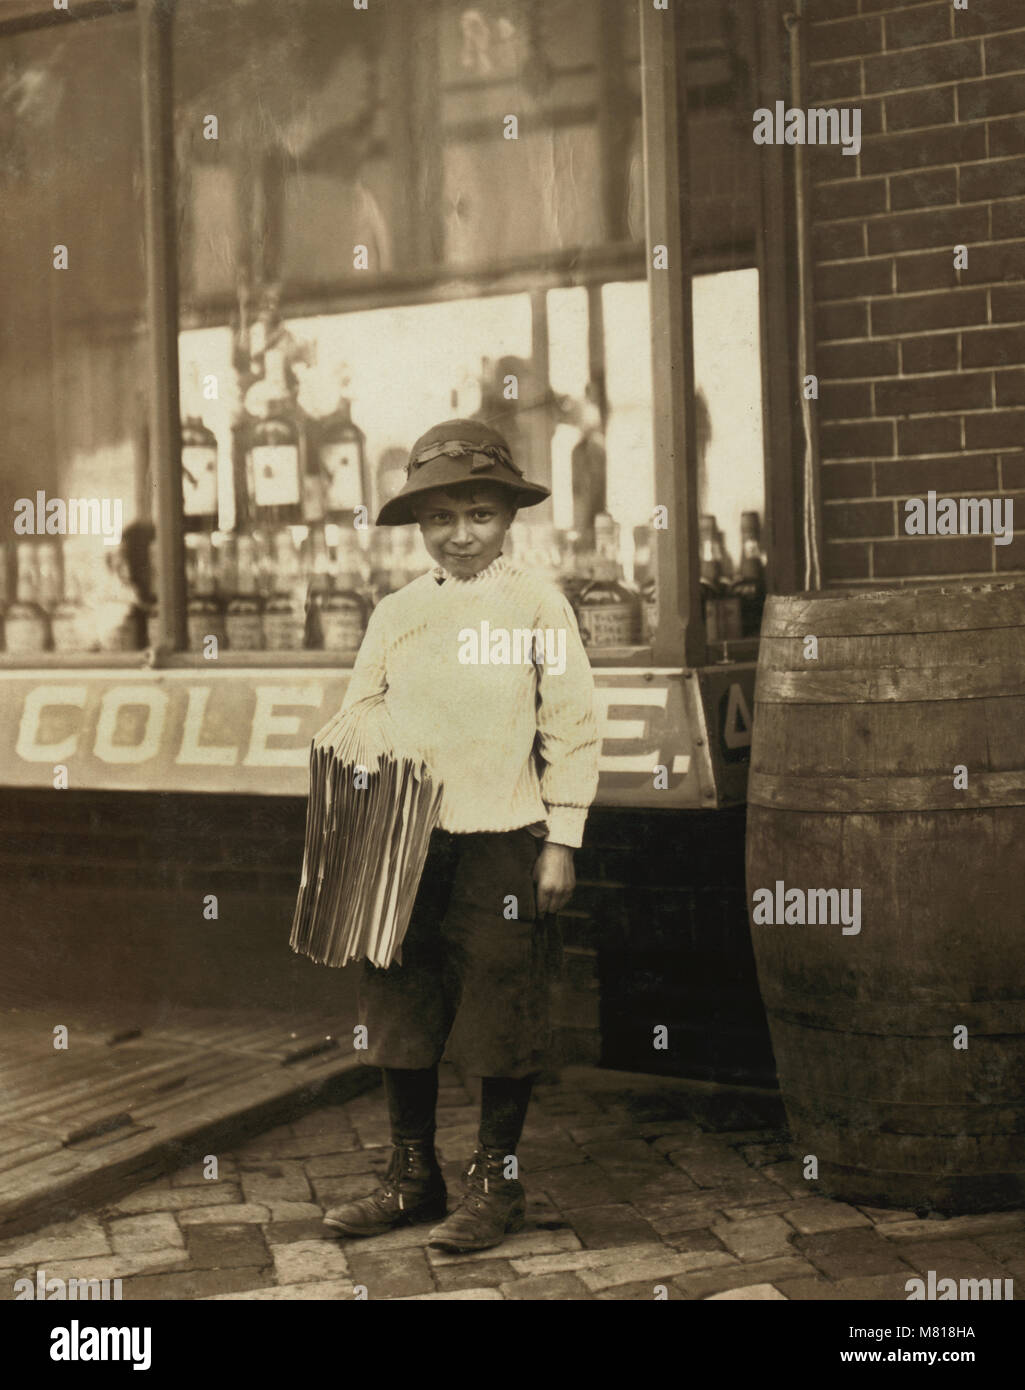 James Morgan, de 9 años de edad, Repartidor de prensa, vender periódicos durante 4 años, trabaja 6 horas al día, visitas de las Berlinas, Full-Length retrato, Wilmington, Delaware, EE.UU., Lewis Hine para el Comité Nacional de Trabajo Infantil, mayo de 1910 Foto de stock